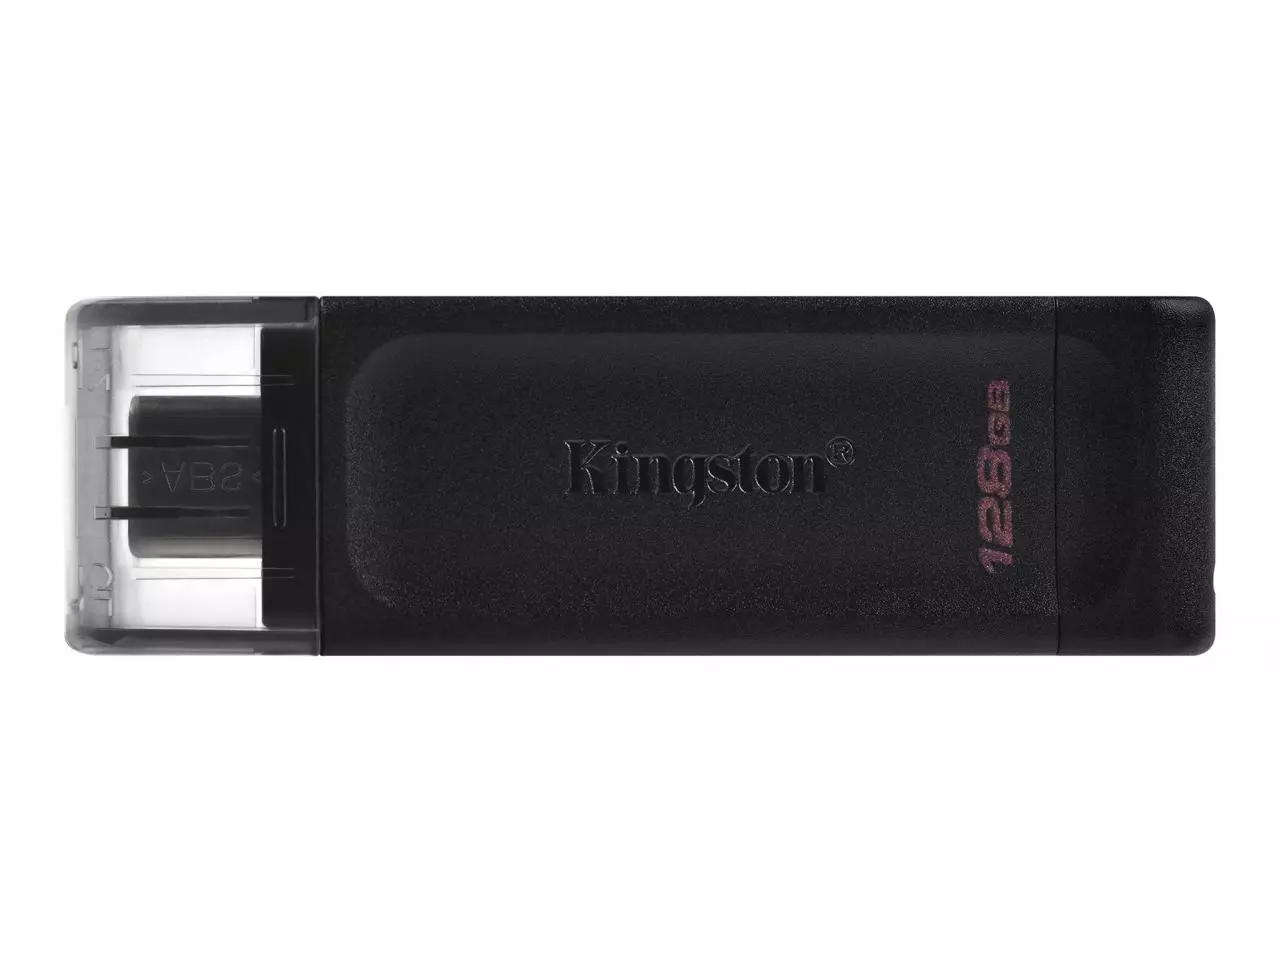 Como usar uma unidade flash USB em um PC Windows - Kingston Technology